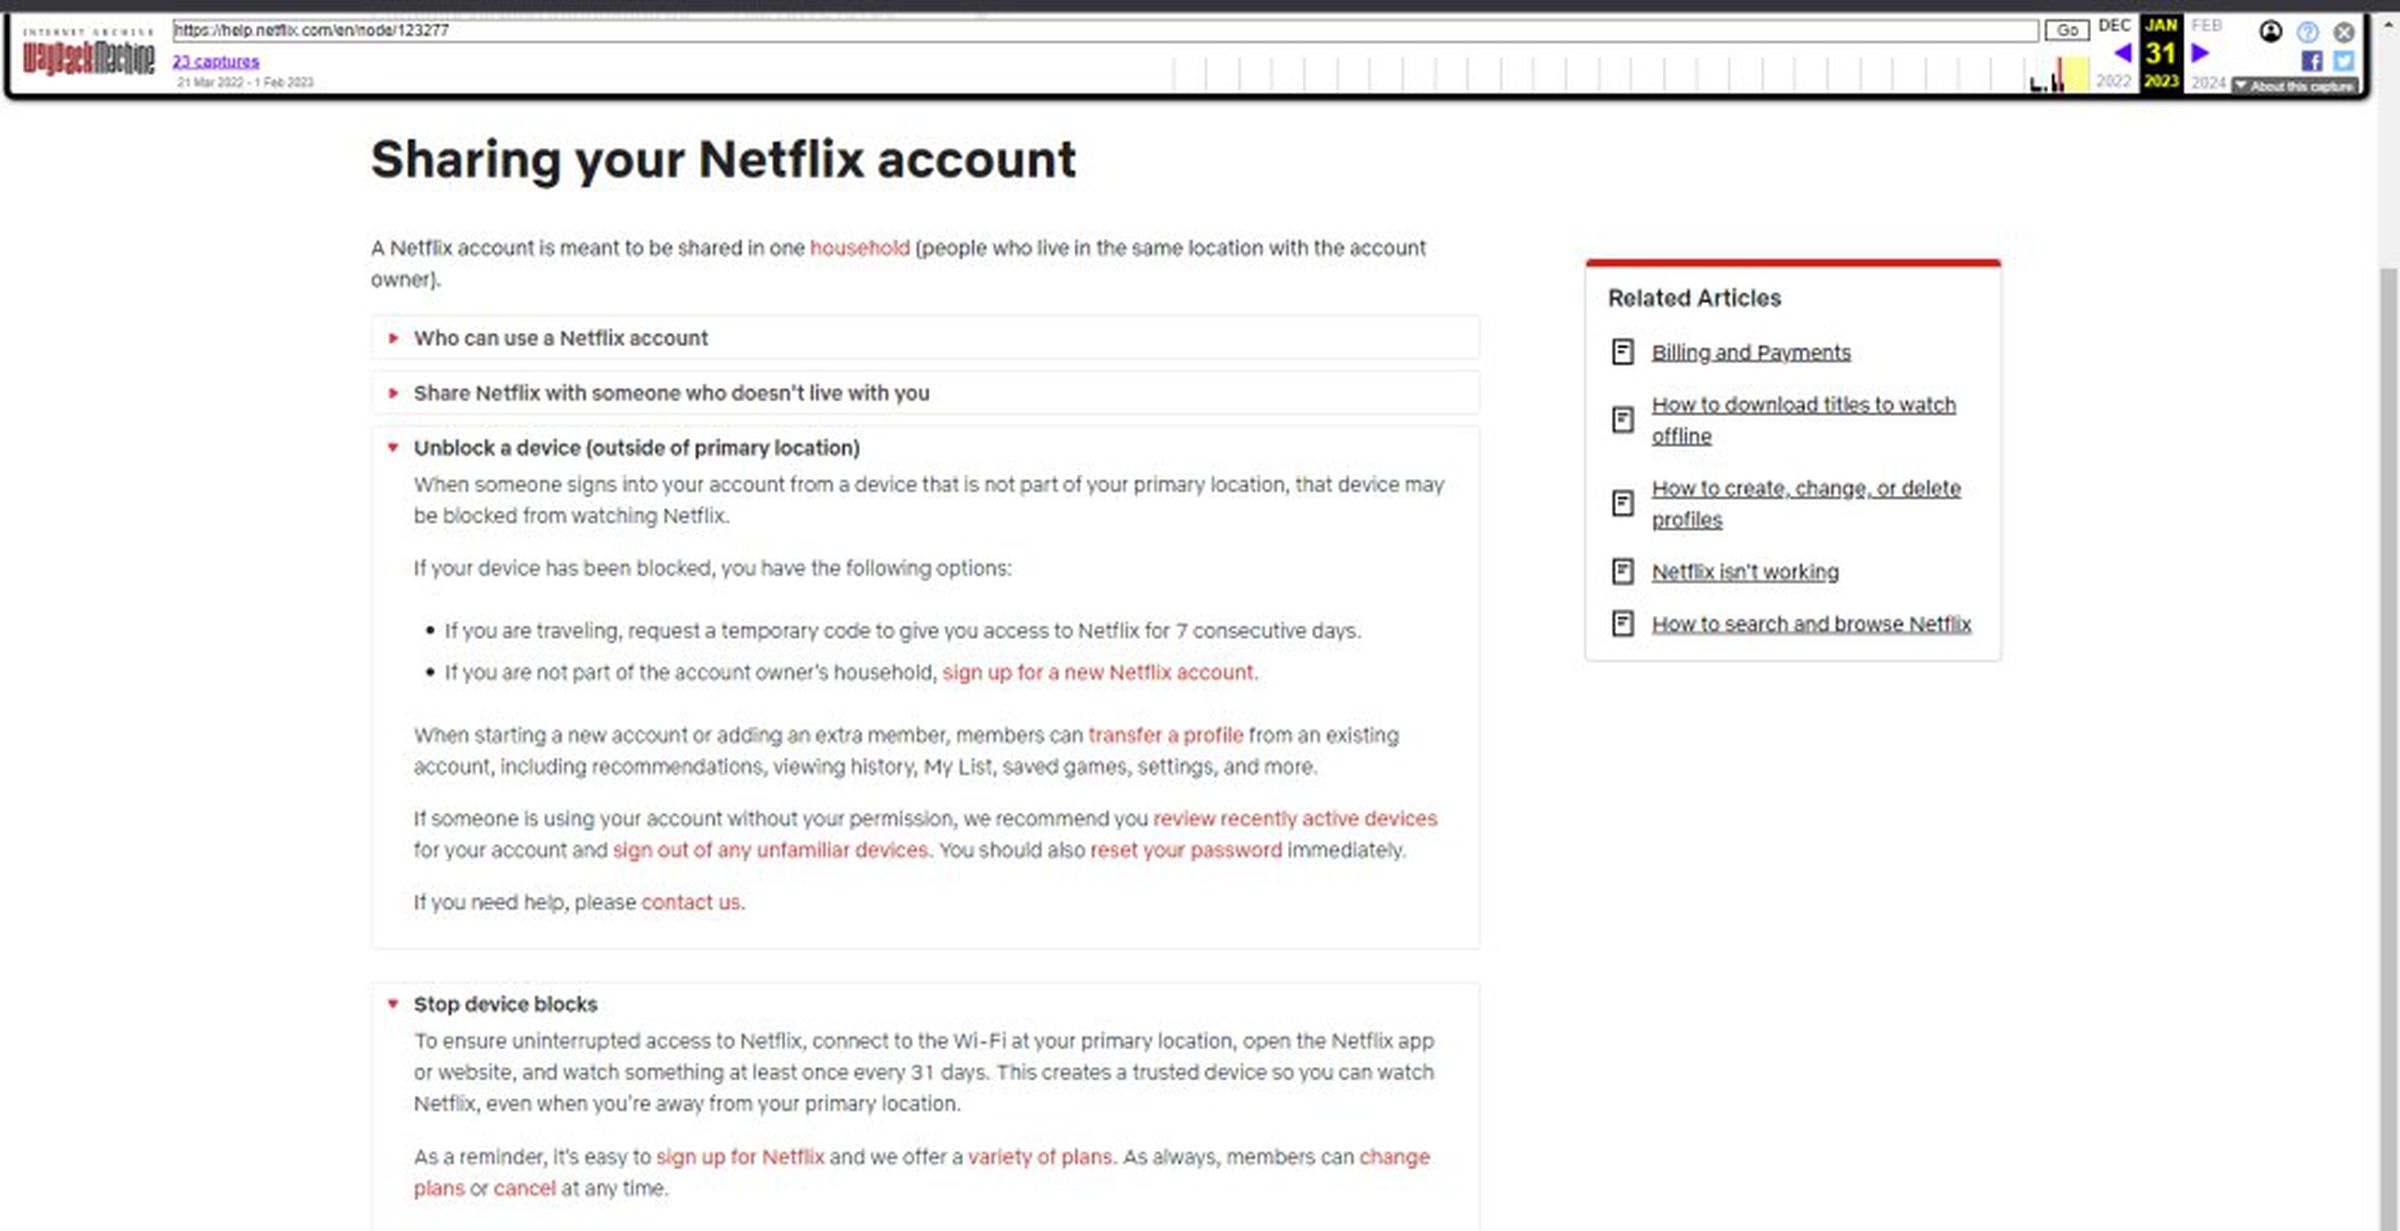 La página de soporte archivada indica que Netflix puede bloquear un dispositivo 